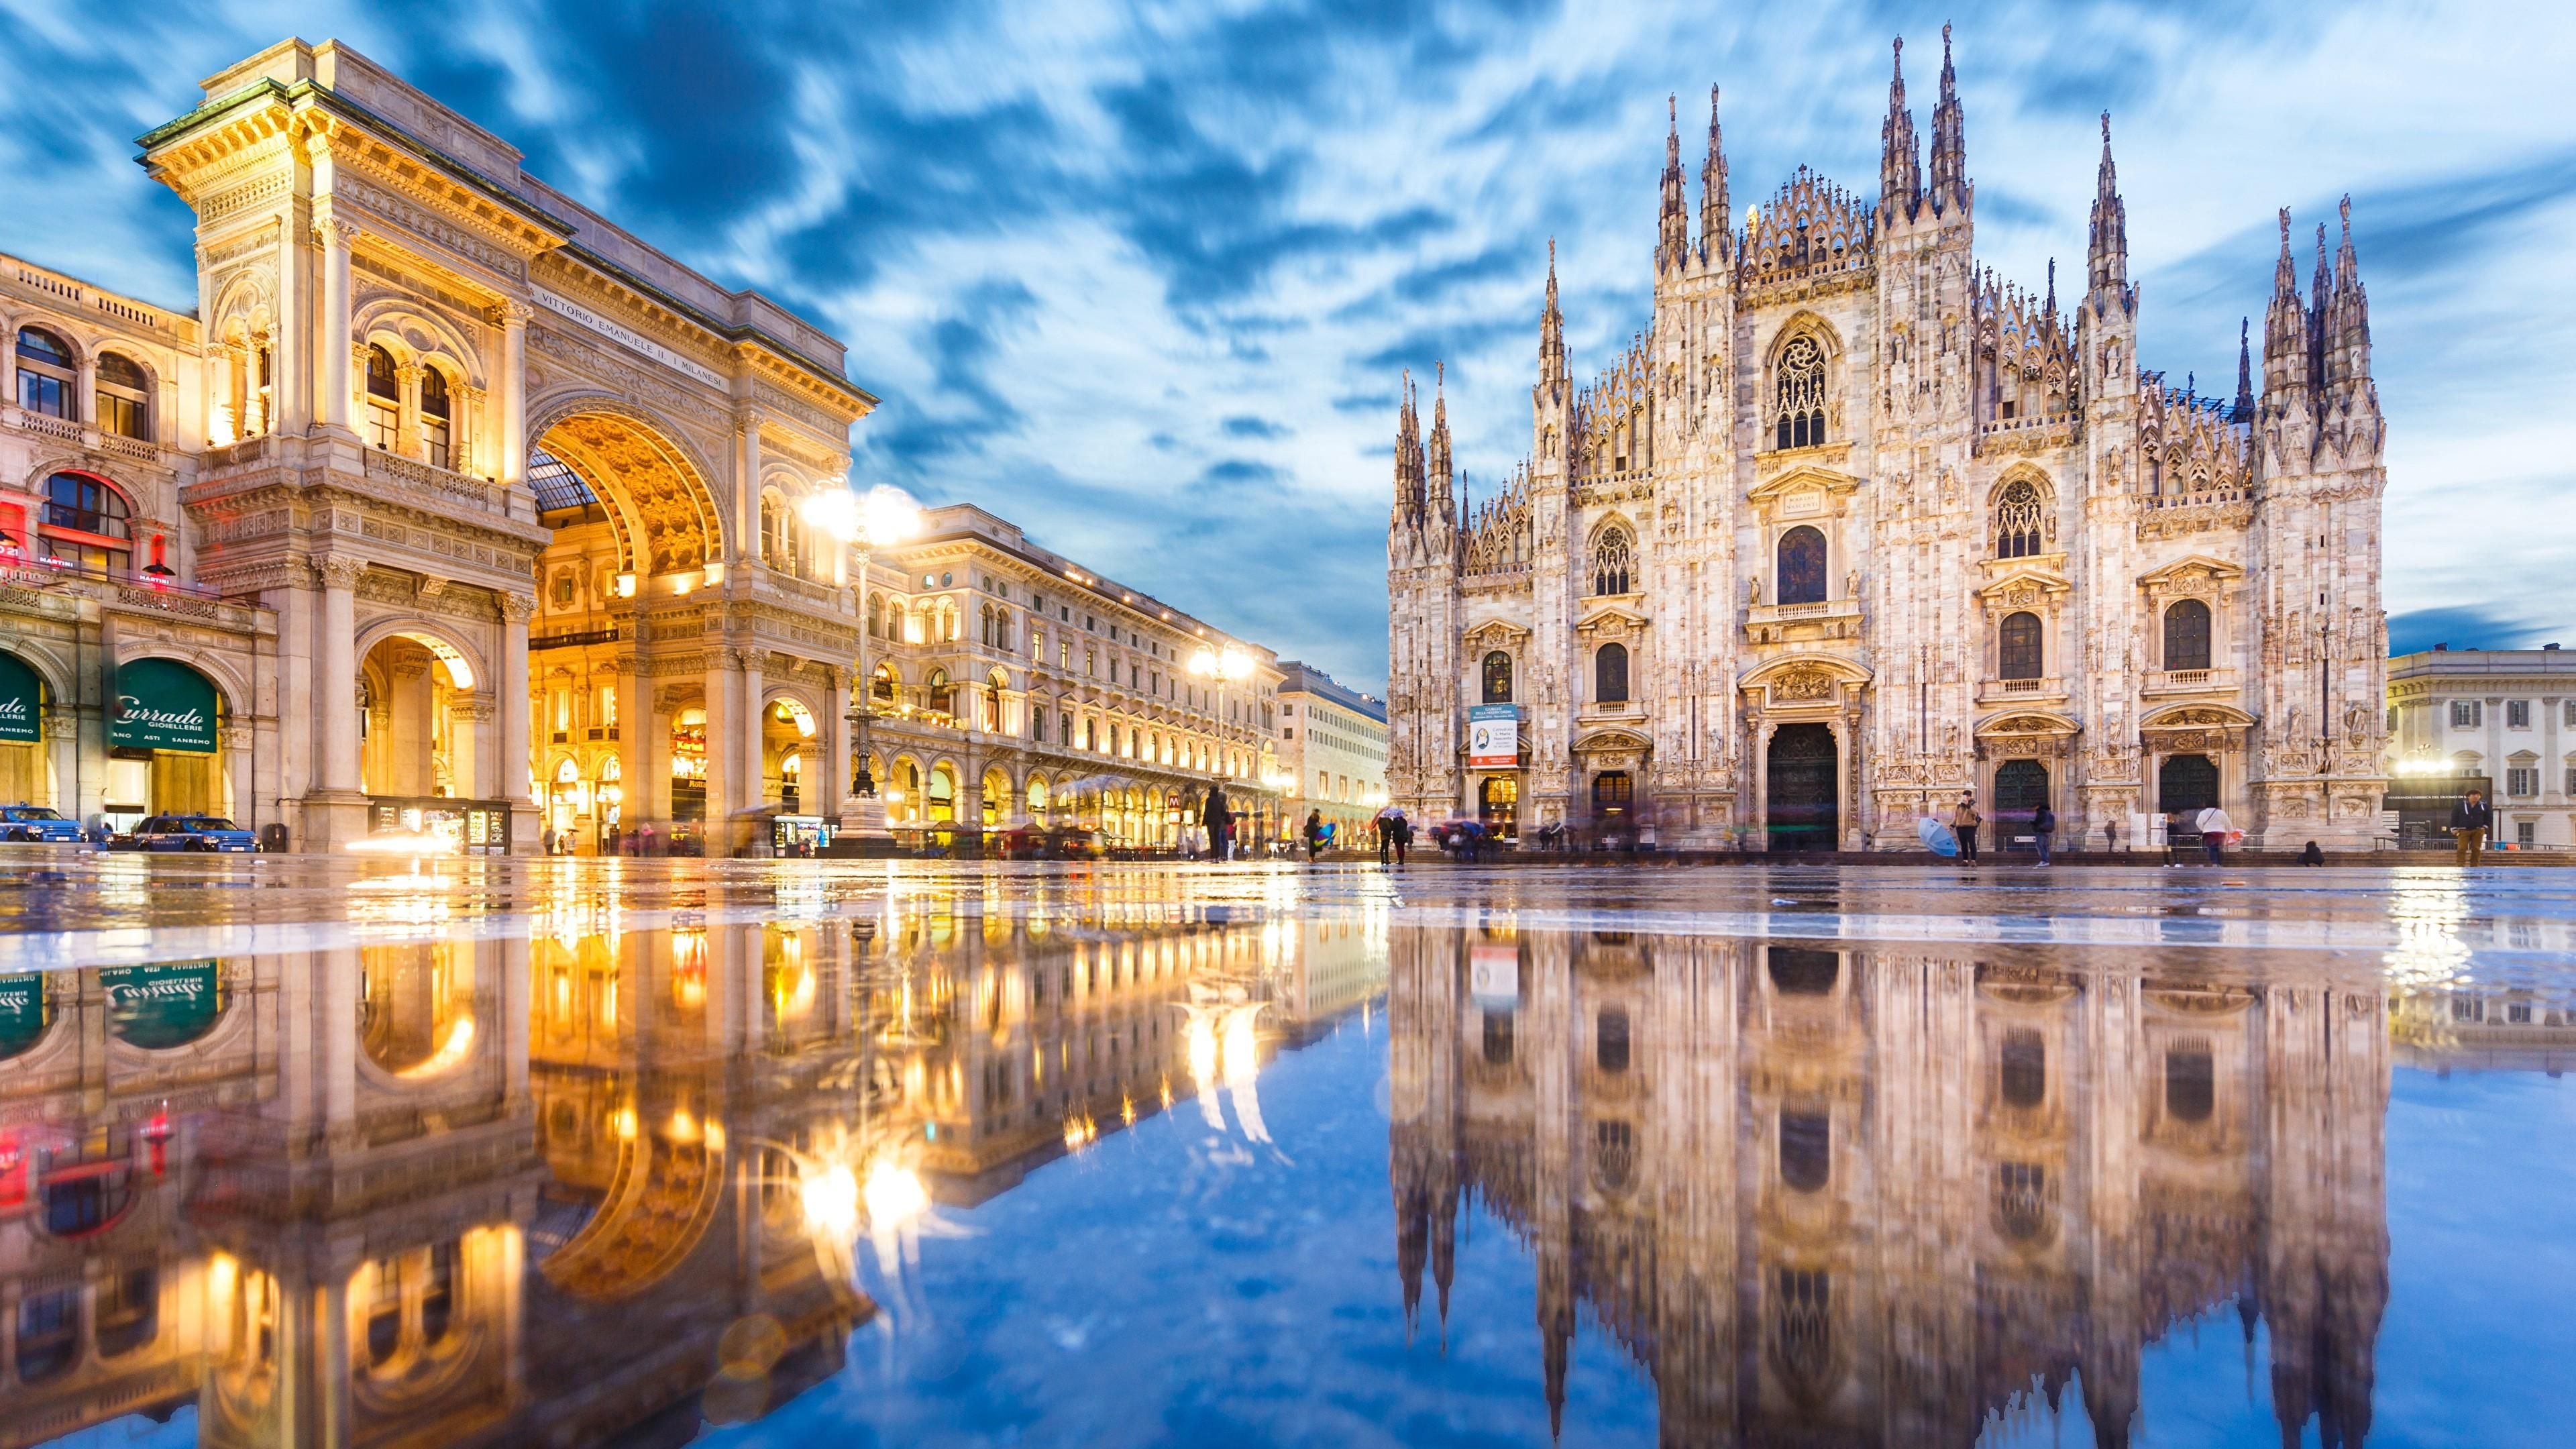 Milan Cathedral, Milan Italy wallpapers, Download at Wallpaperbro, Italy travel, 3840x2160 4K Desktop